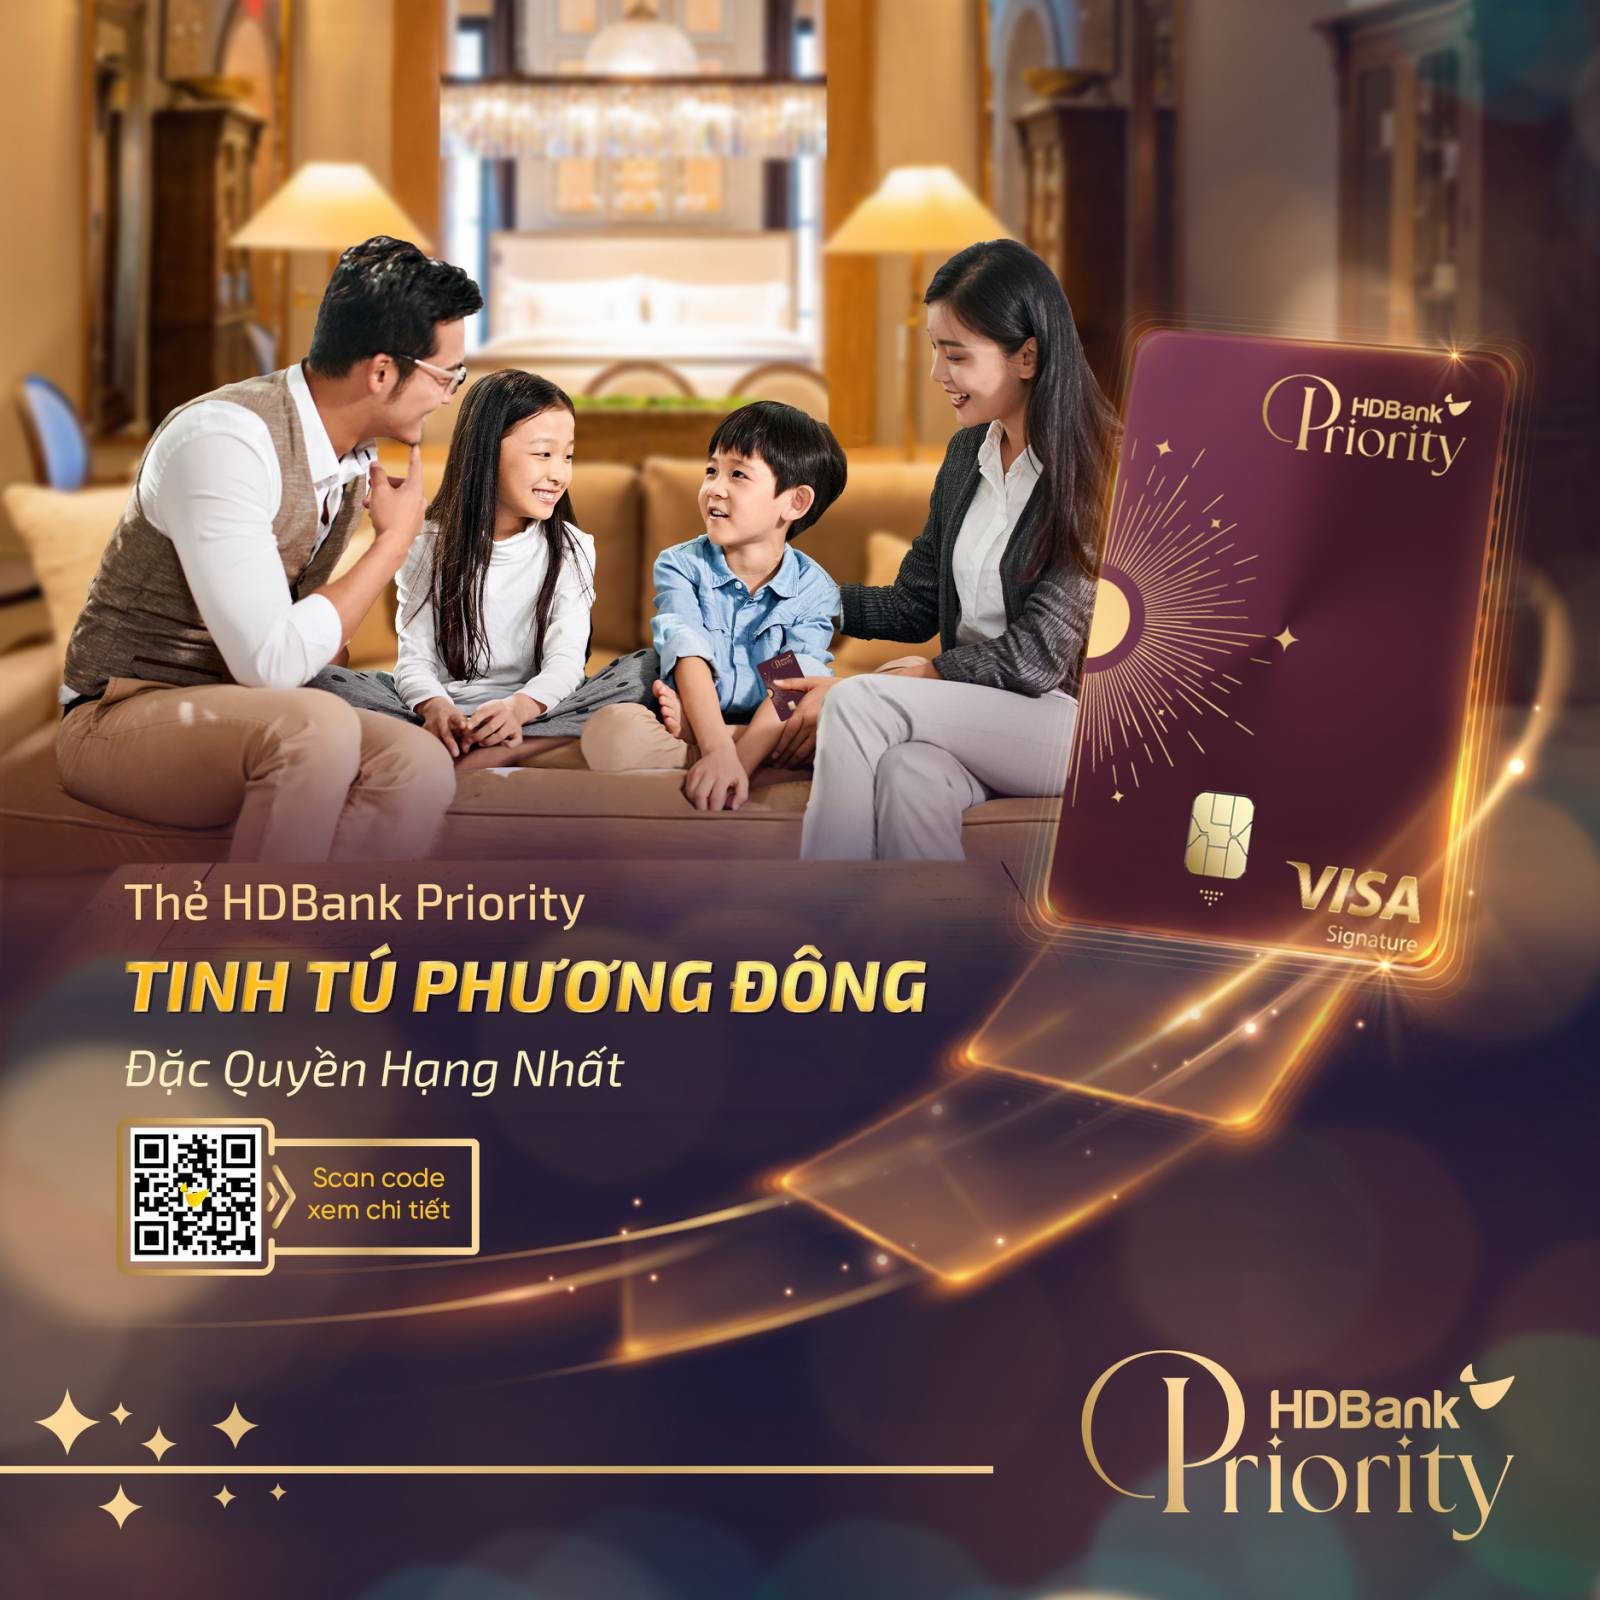 hinh-7-the-tin-dung-hdbank-priority-tinh-tu-phuong-dong-1688444217.jpg